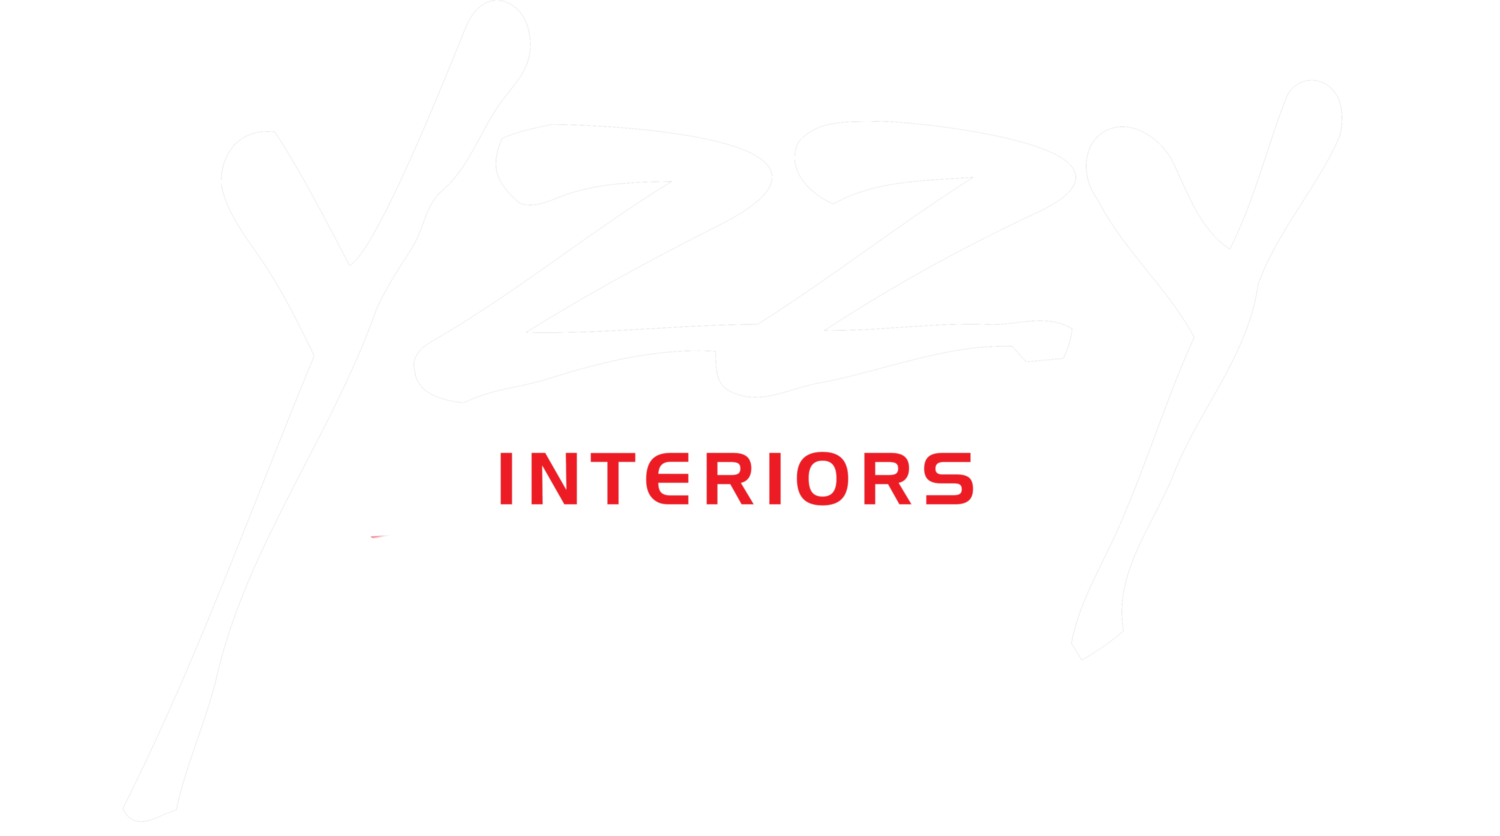 Yzzy interiors